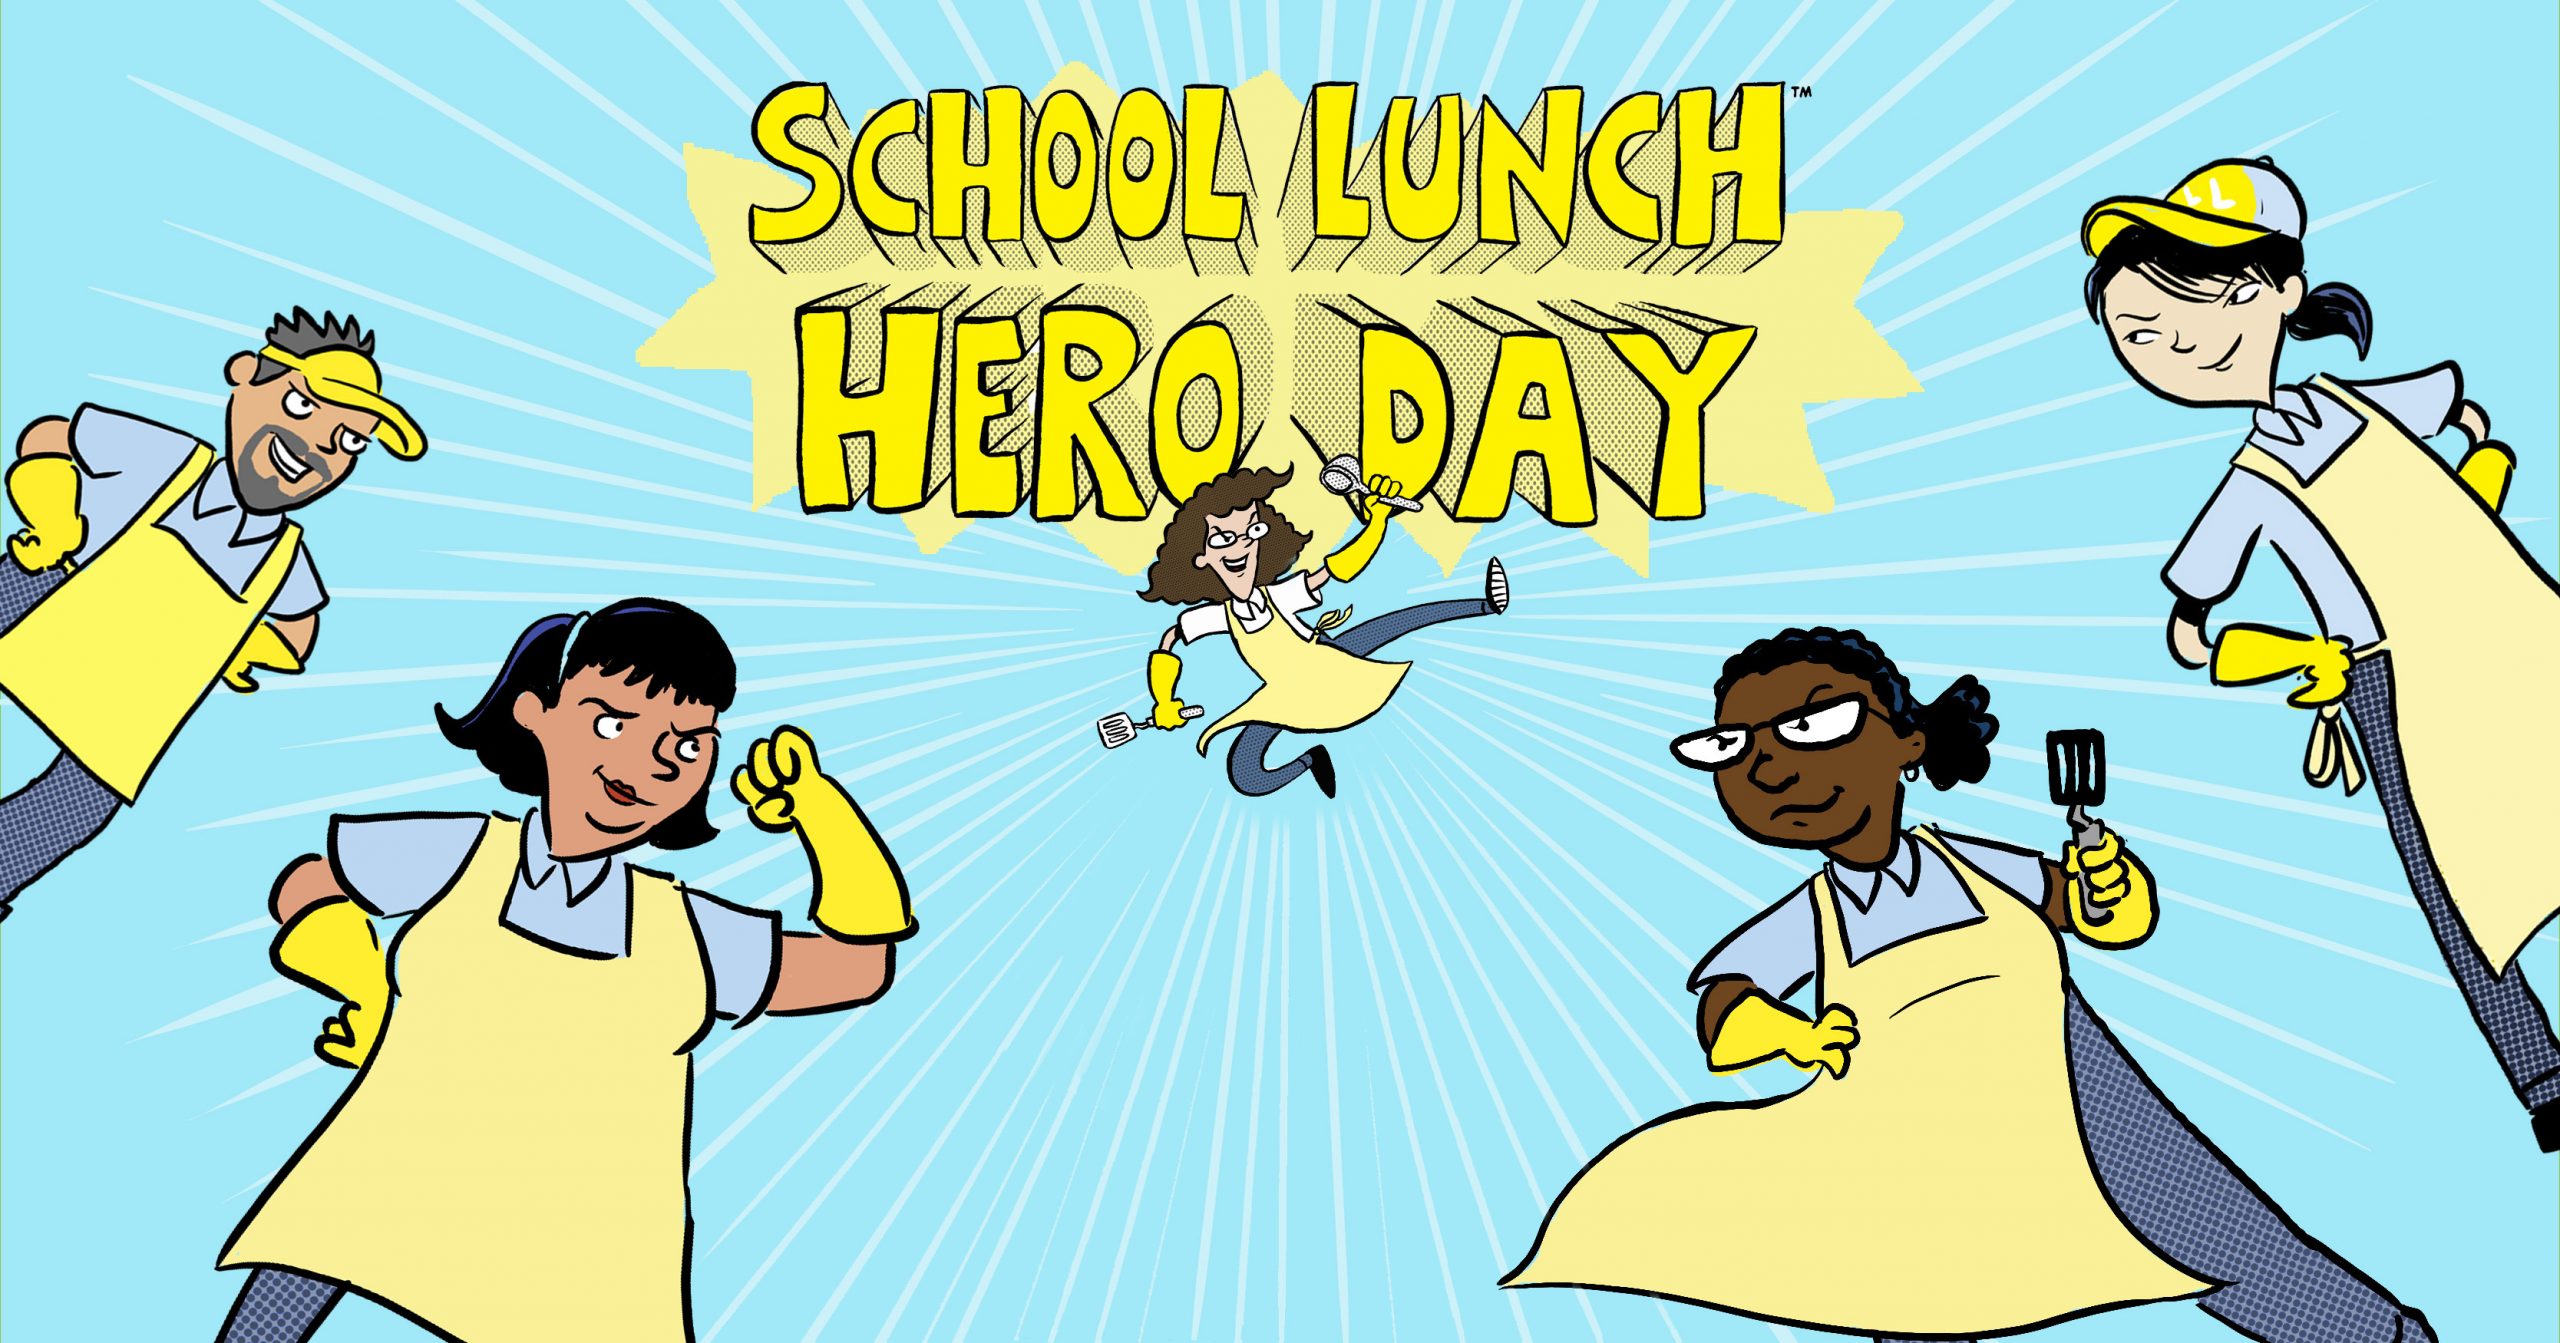 School lunch heros